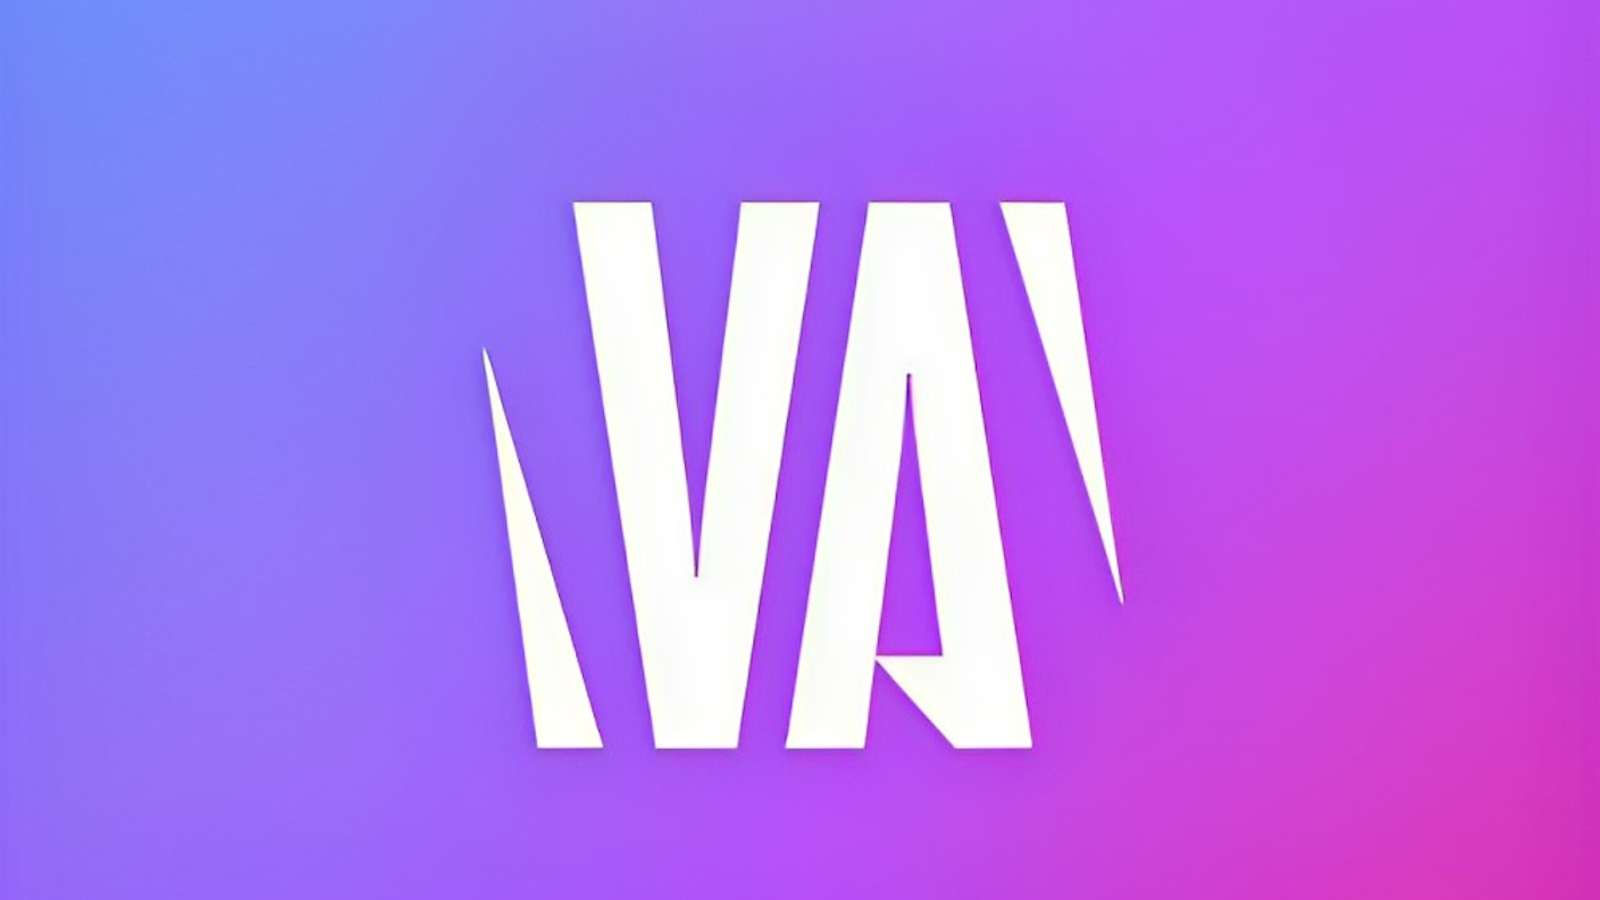 The Vtuber Awards official logo.